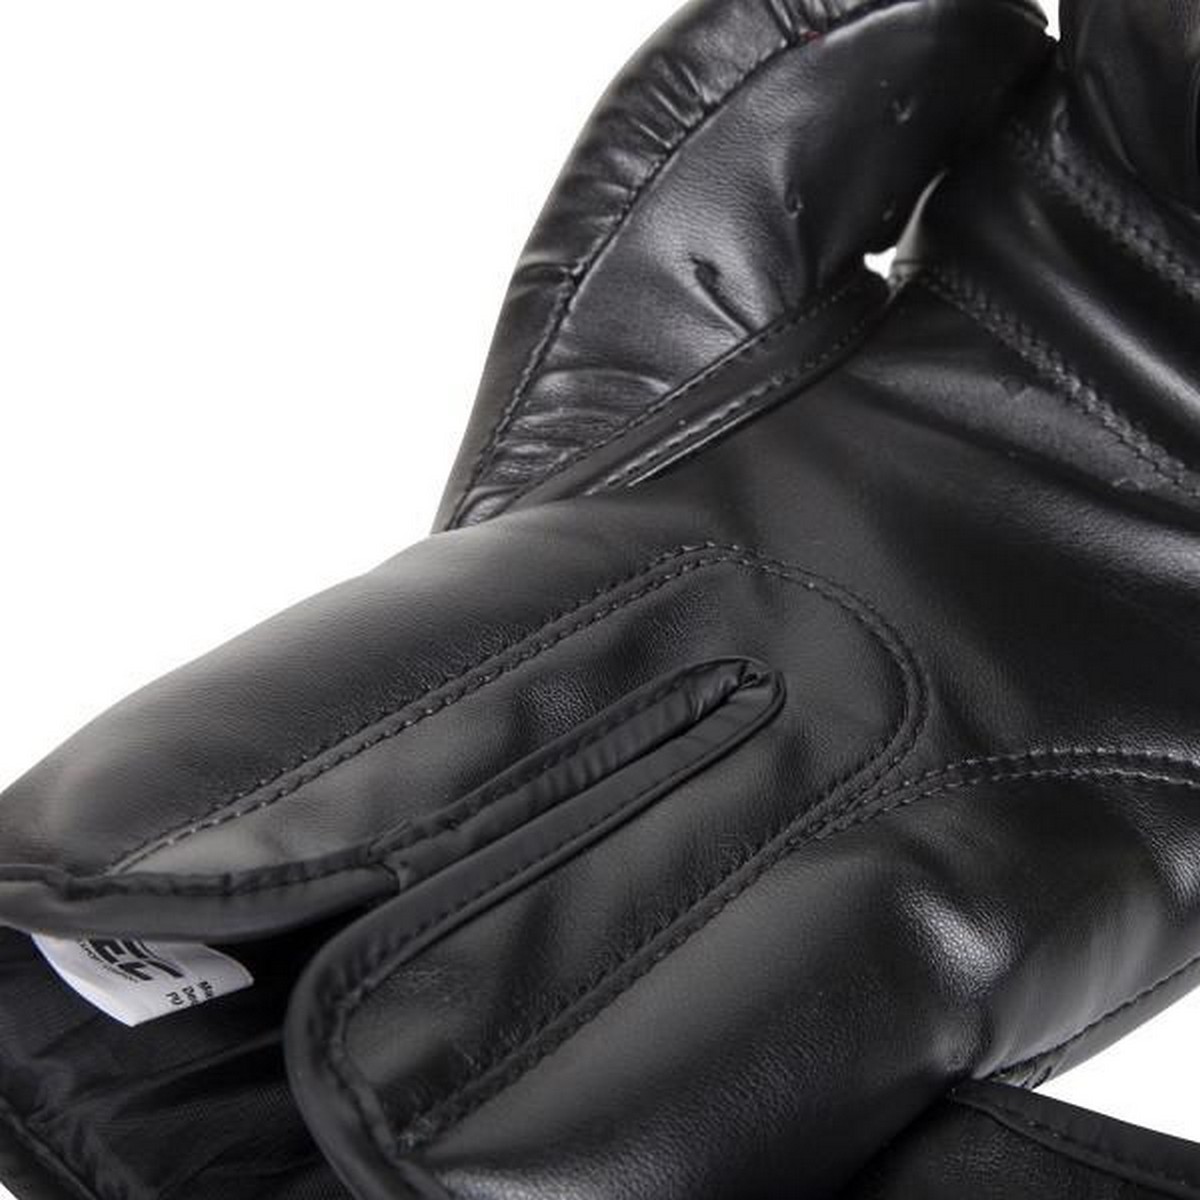 Перчатки Venum Contender 1109-12oz черный 1200_1200